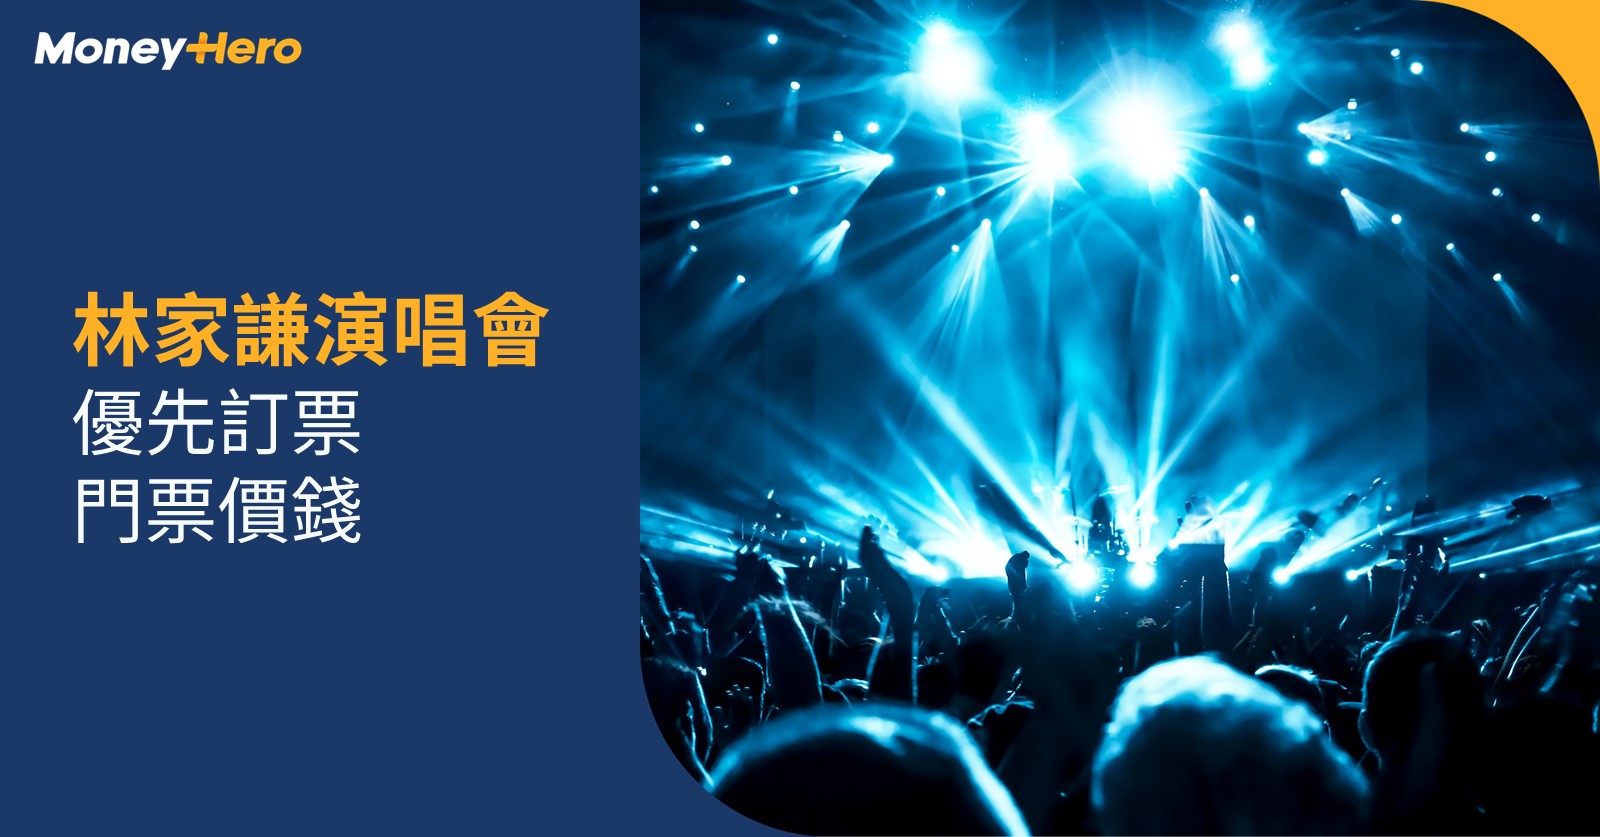 林家謙演唱會門票2022 | 7.14 Urbtix公開發售+紅館座位表/價錢